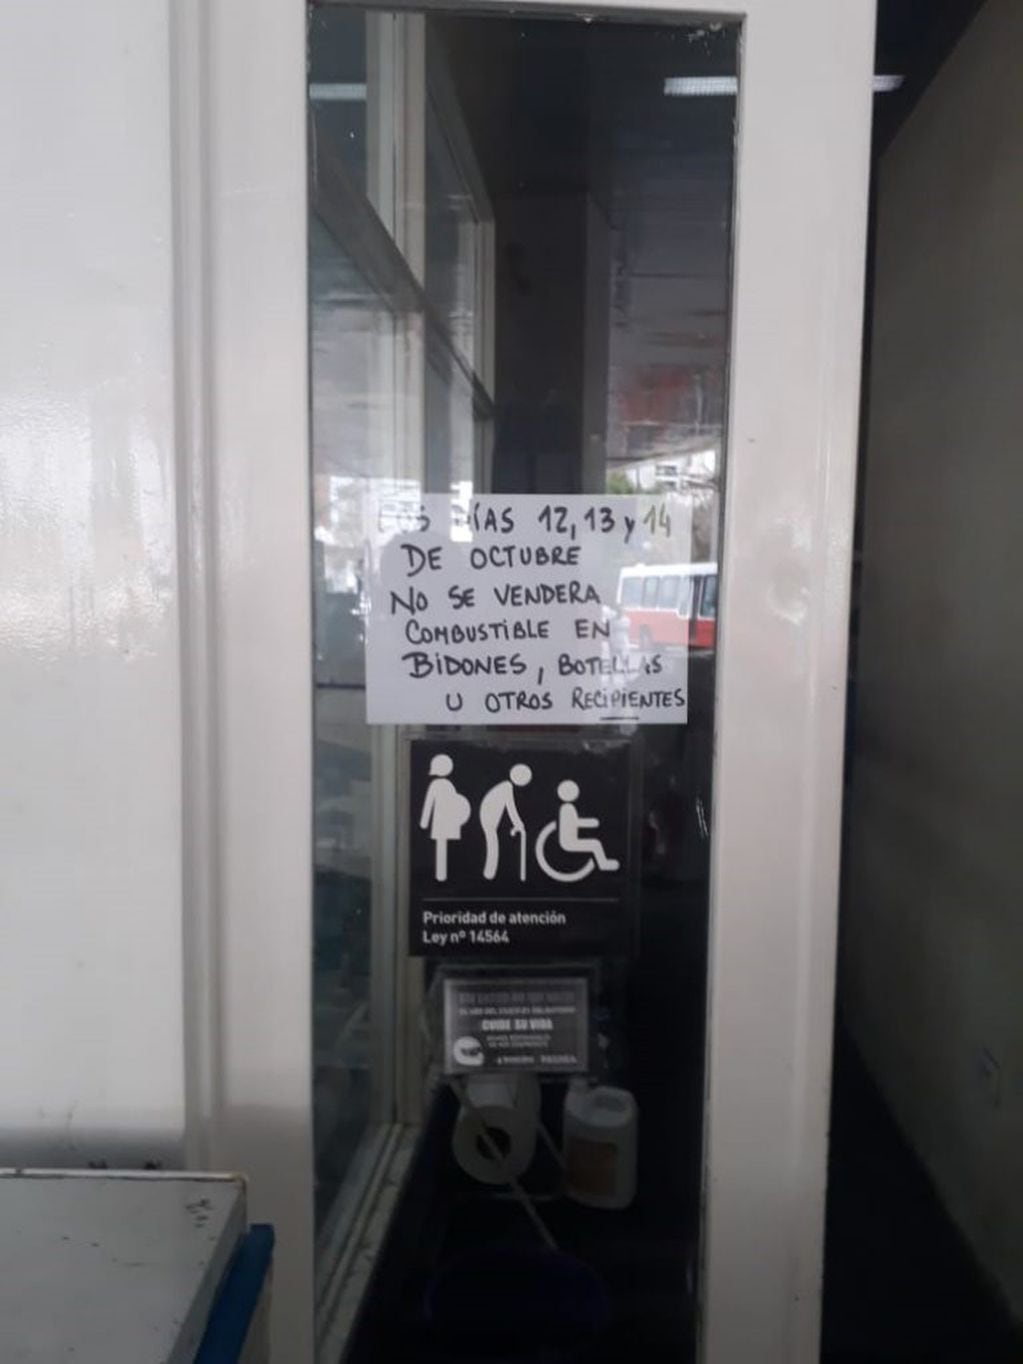 Varias estaciones de servicio exhibieron carteles informando que no expenderán naftas ni gasoil en bidones (web).